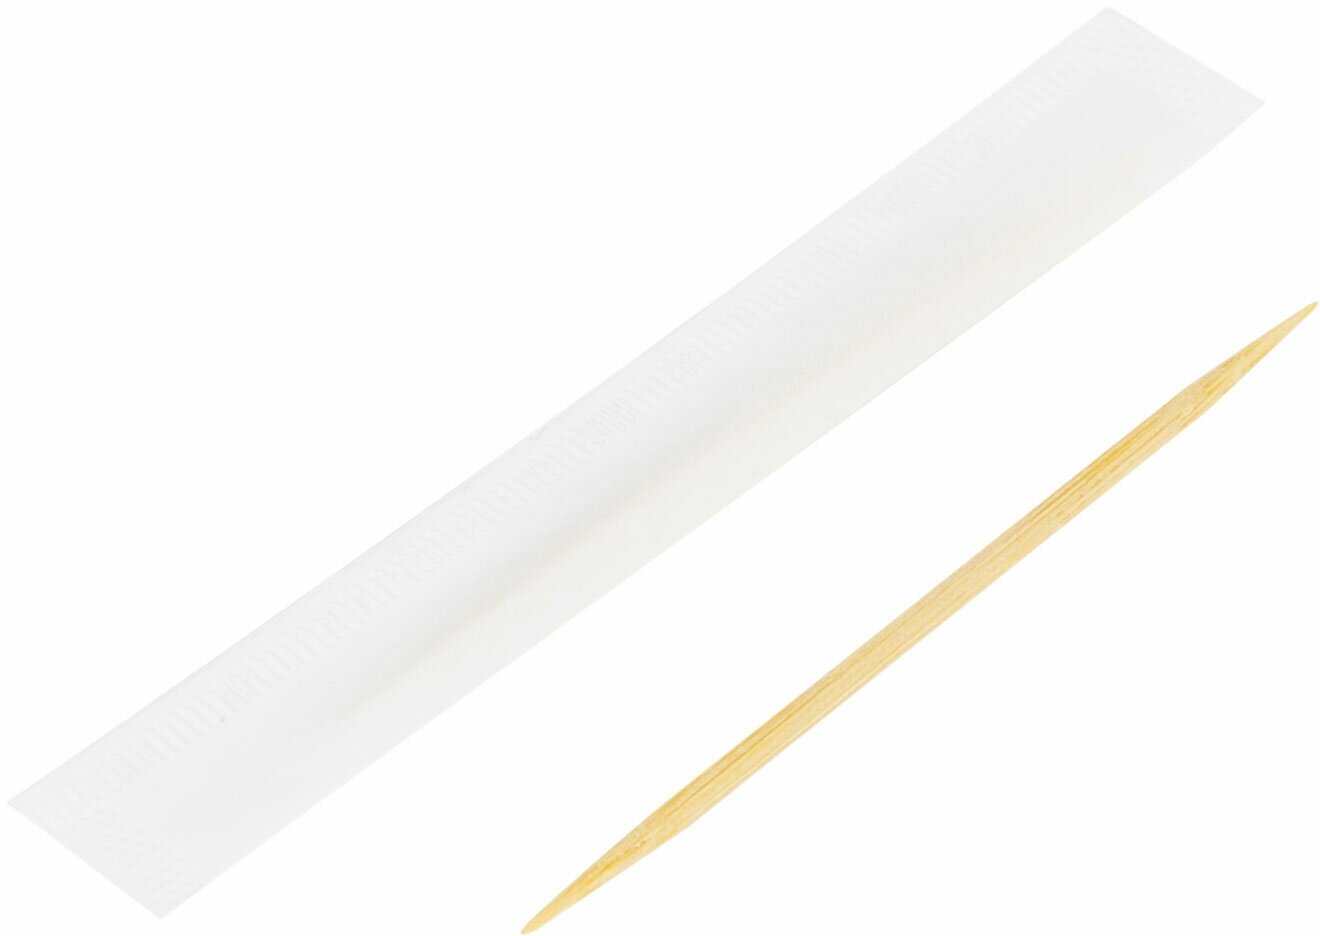 Зубочистки деревянные бамбуковые в индивидуальной упаковке для ухода за полостью рта 1000 штук, Белый Аист, 607568